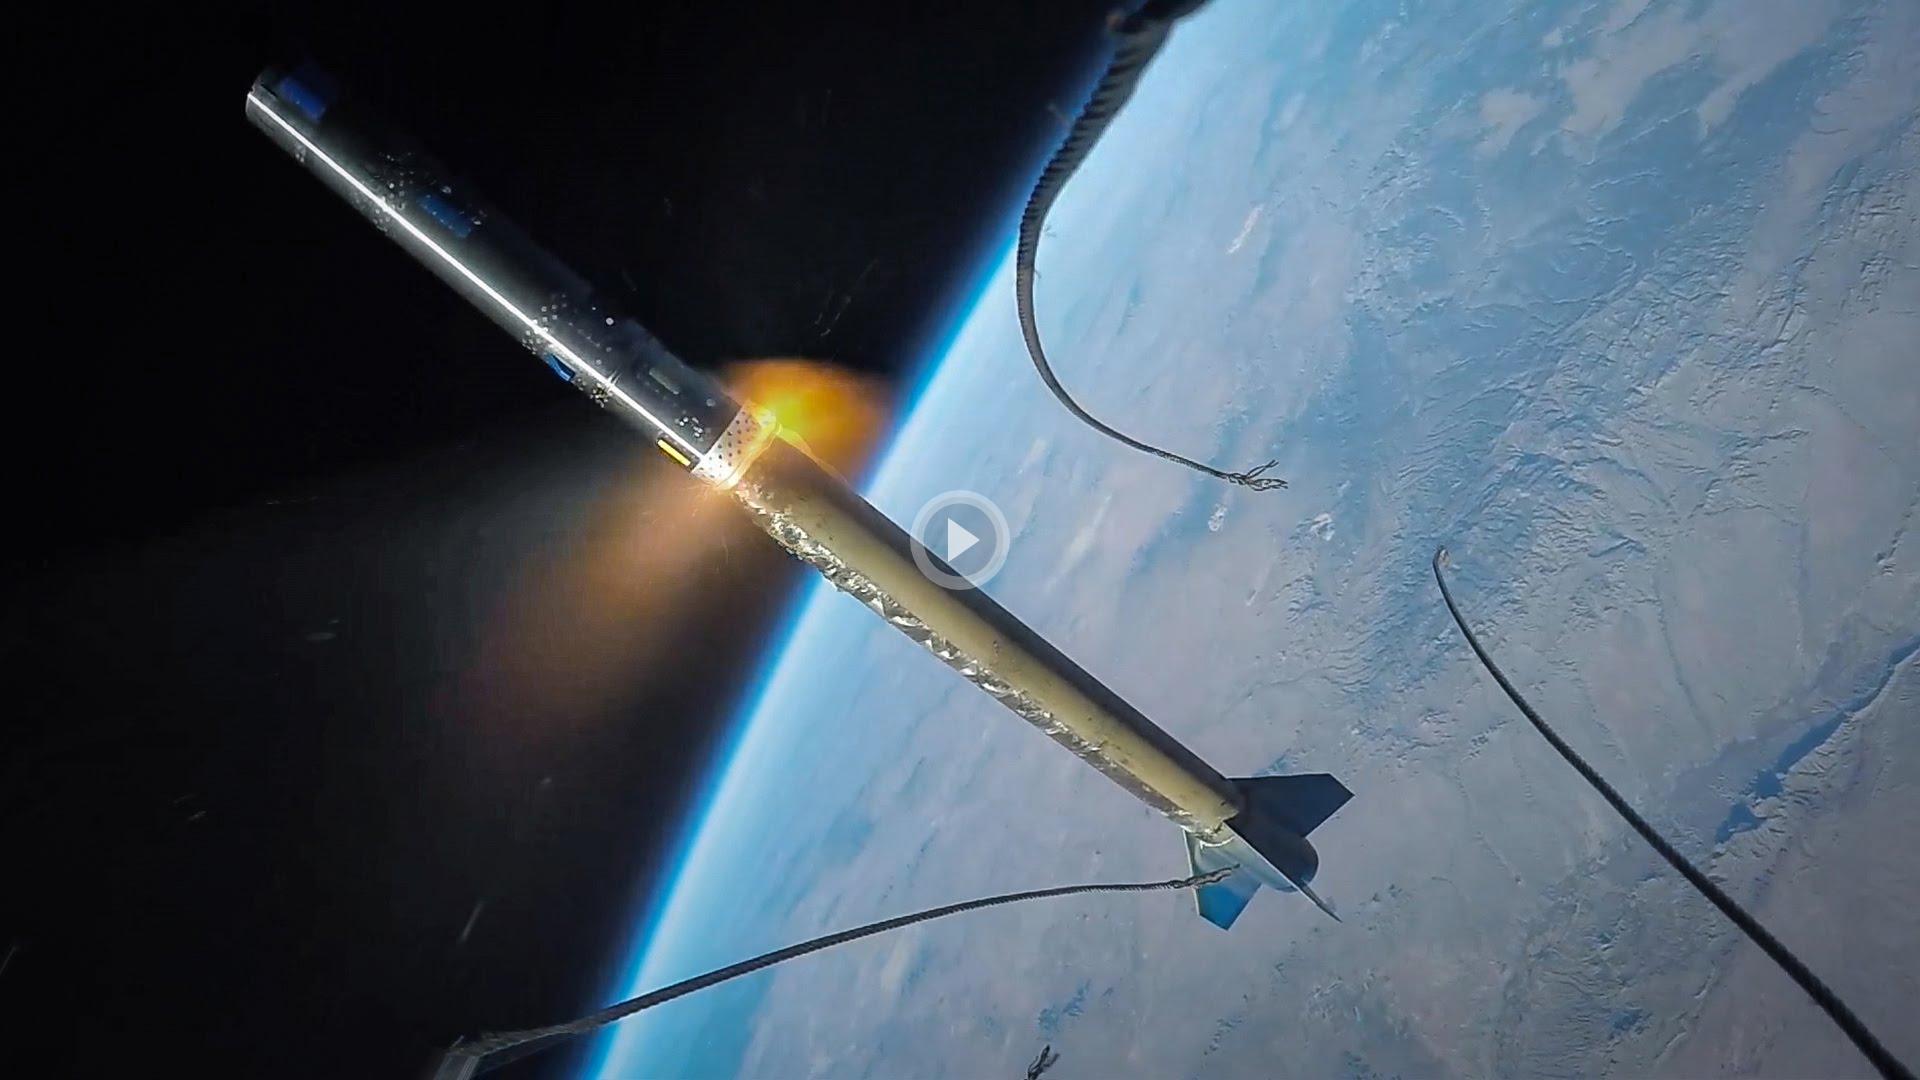 Удивительные кадры – GoPro прикрепили к ракете и отправили в космос!